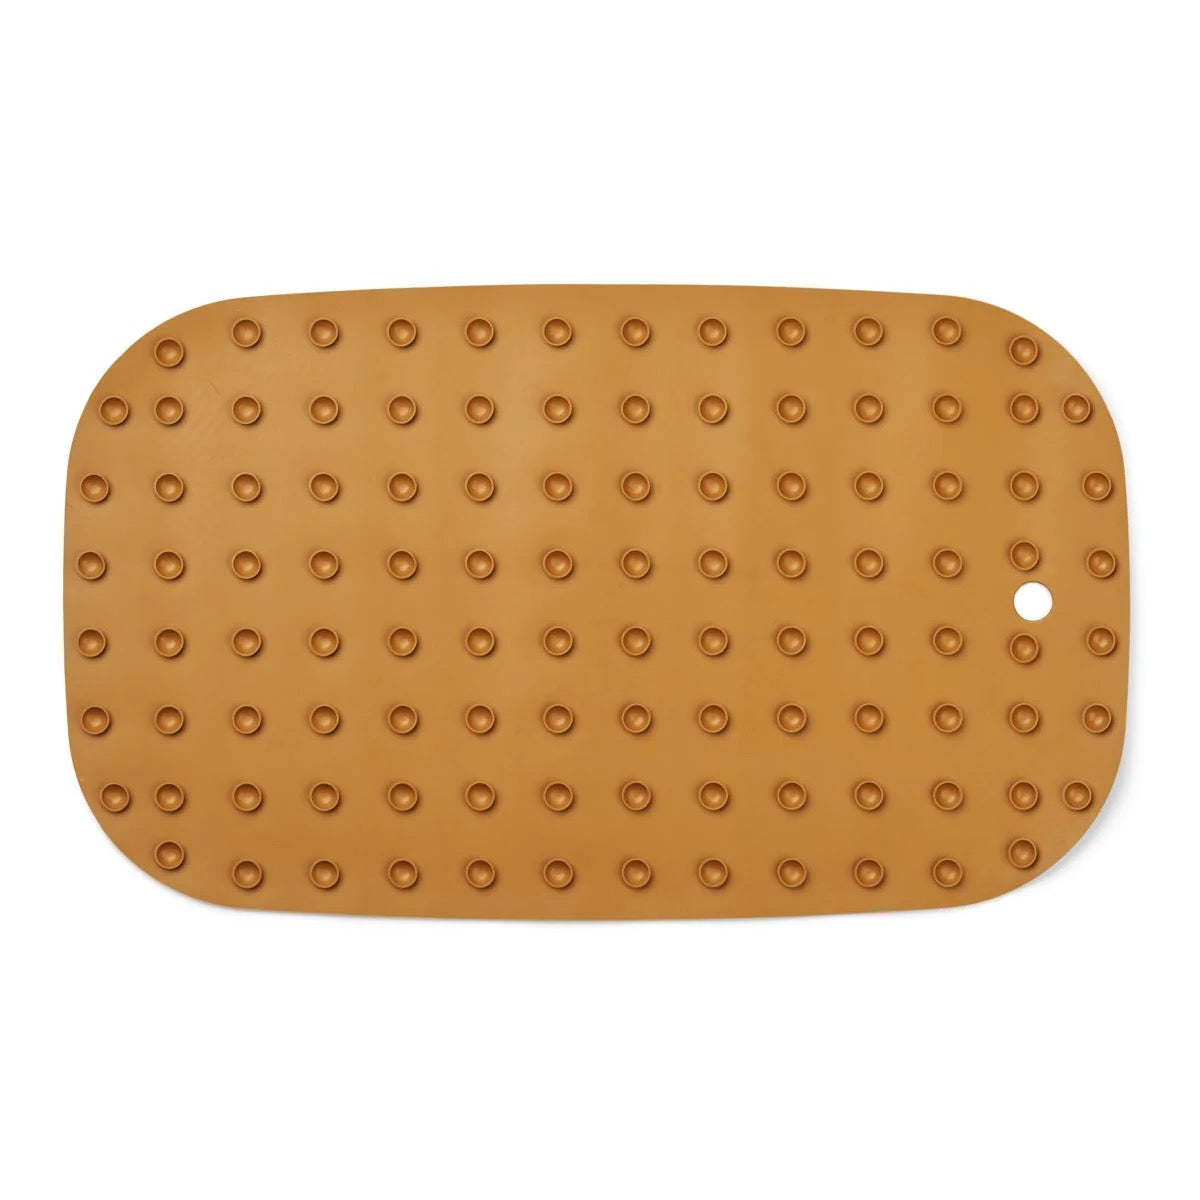 De Liewood badmat golden caramel is het perfecte accessoire voor in de badkamer. Dankzij deze badmat heb je warme voetjes en glijd je niet uit wanneer je uit bad stapt. VanZus.